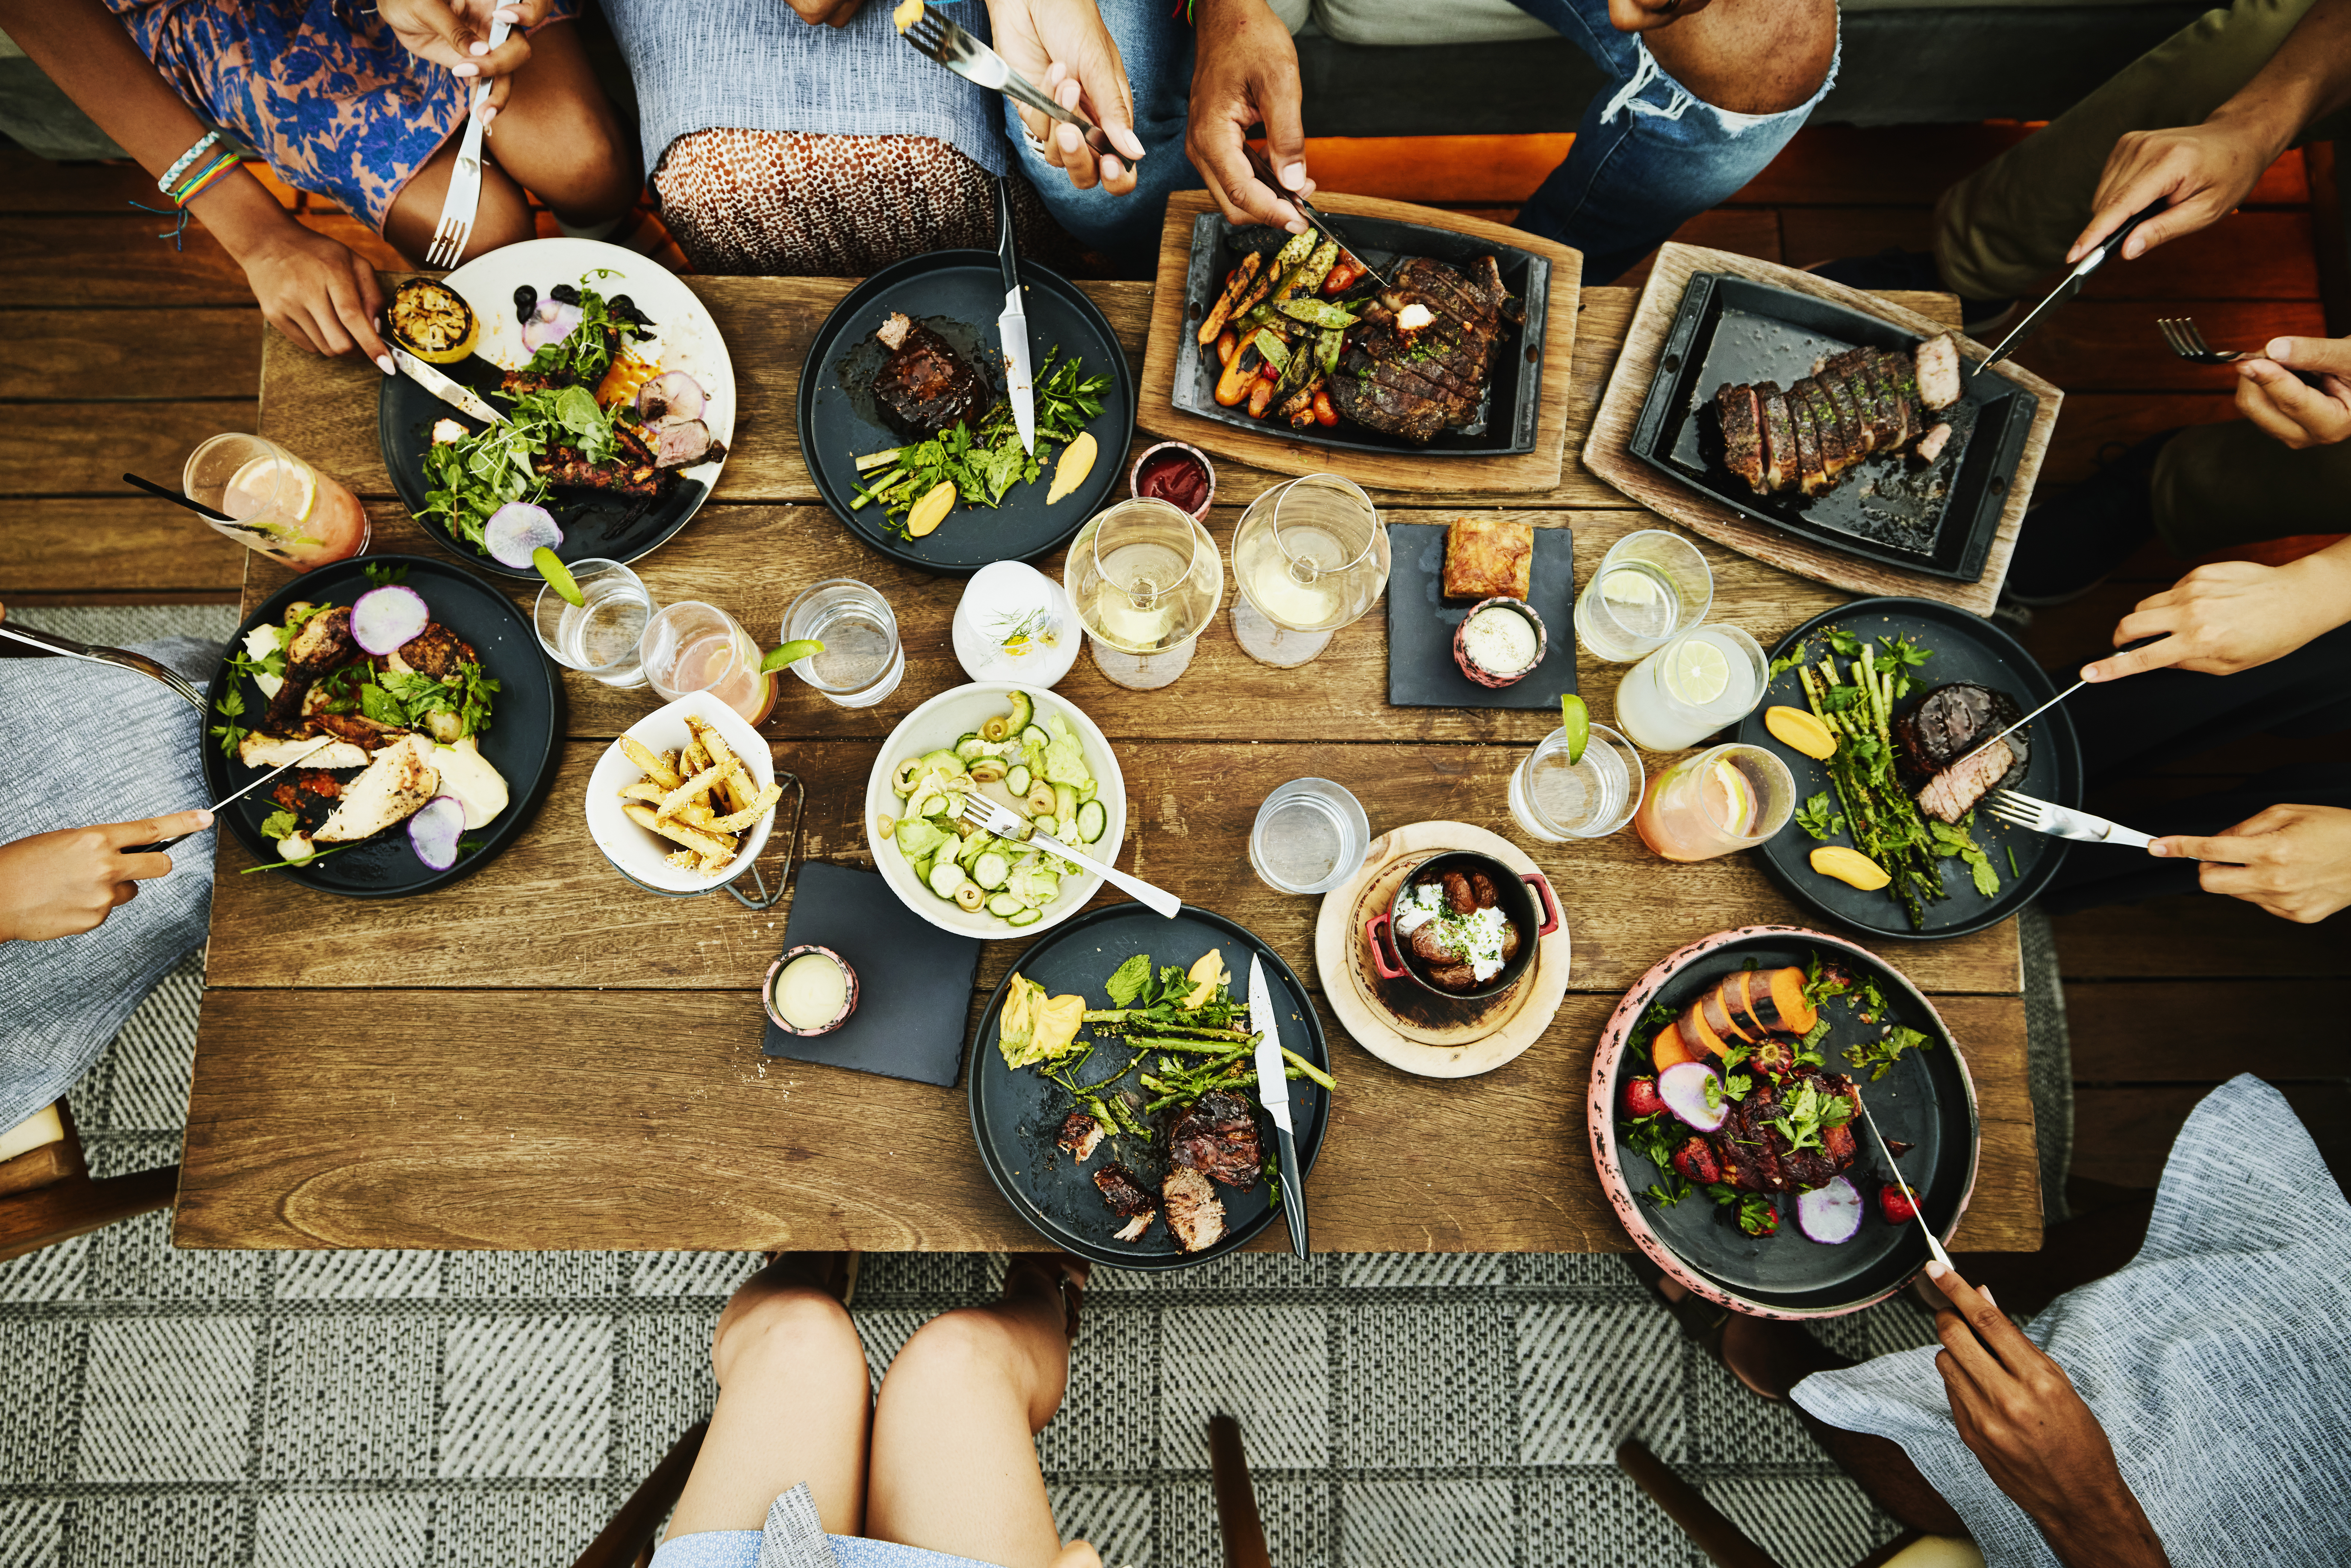 Membres d'une famille partageant un dîner dans un restaurant | Source : Getty Images